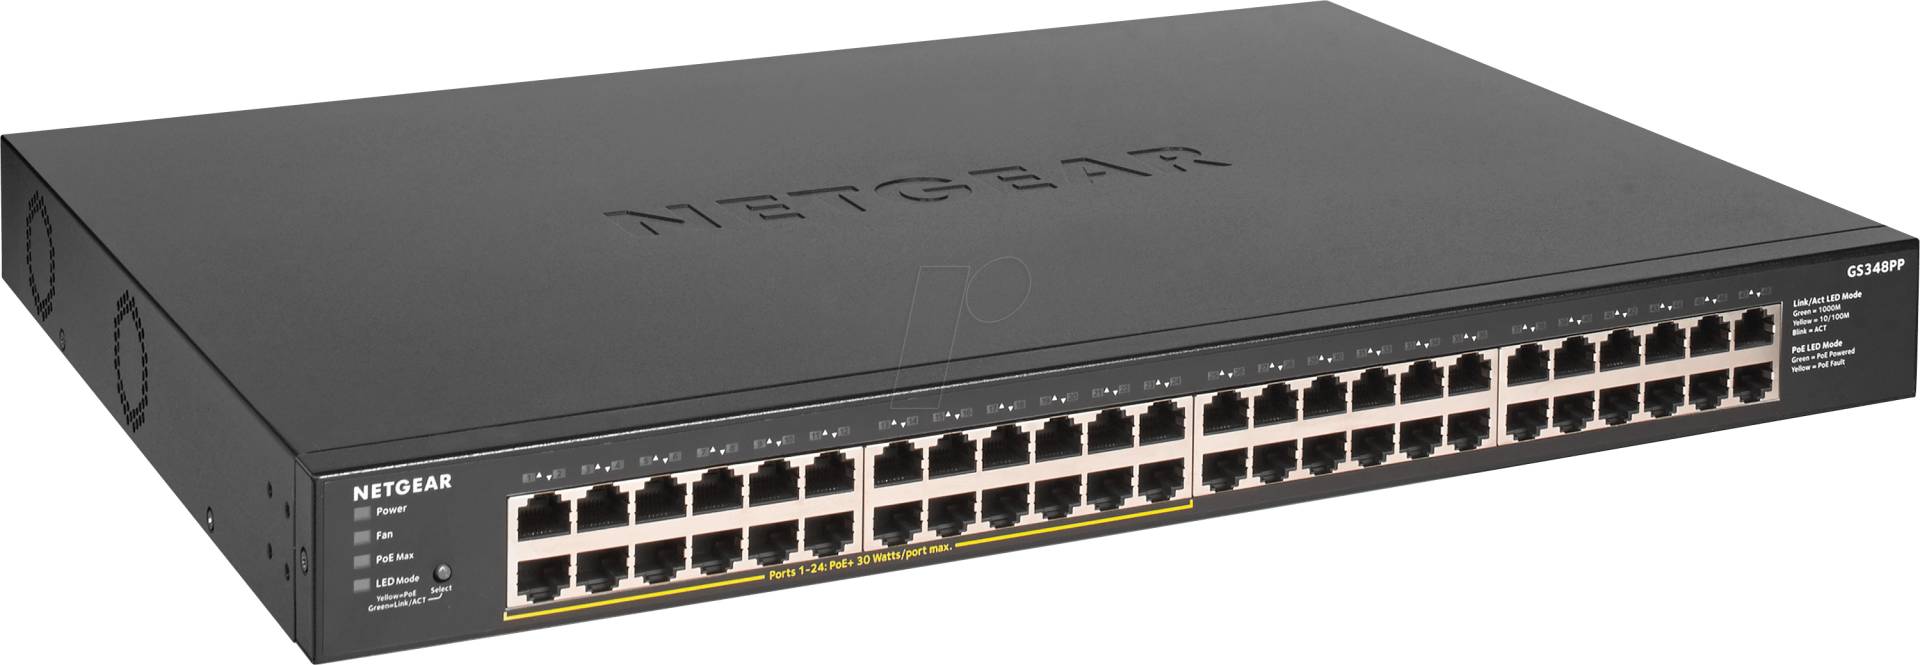 NETGEAR GS348PP - Switch, 48-Port, Gigabit Ethernet von Netgear